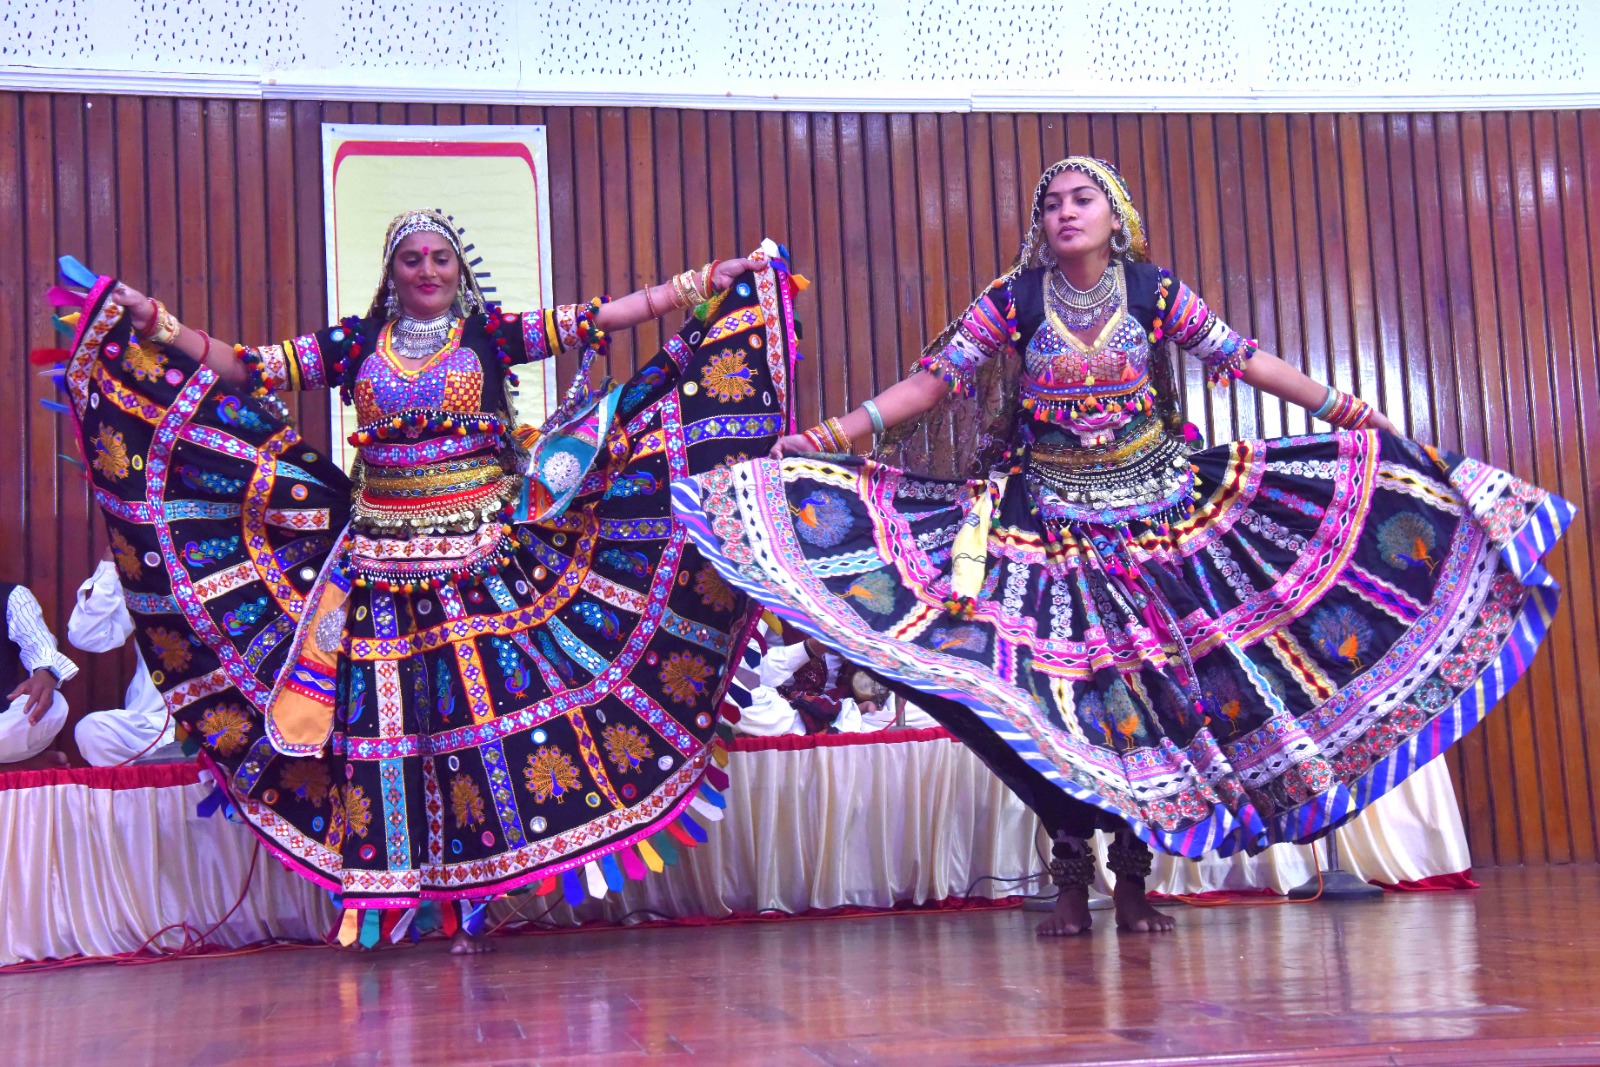 Rajasthani Folk Music & Dance by Shri Bungarkhan & Team, organised by CSIR-NIIST Staff Recreation Club and SPICMACAY 